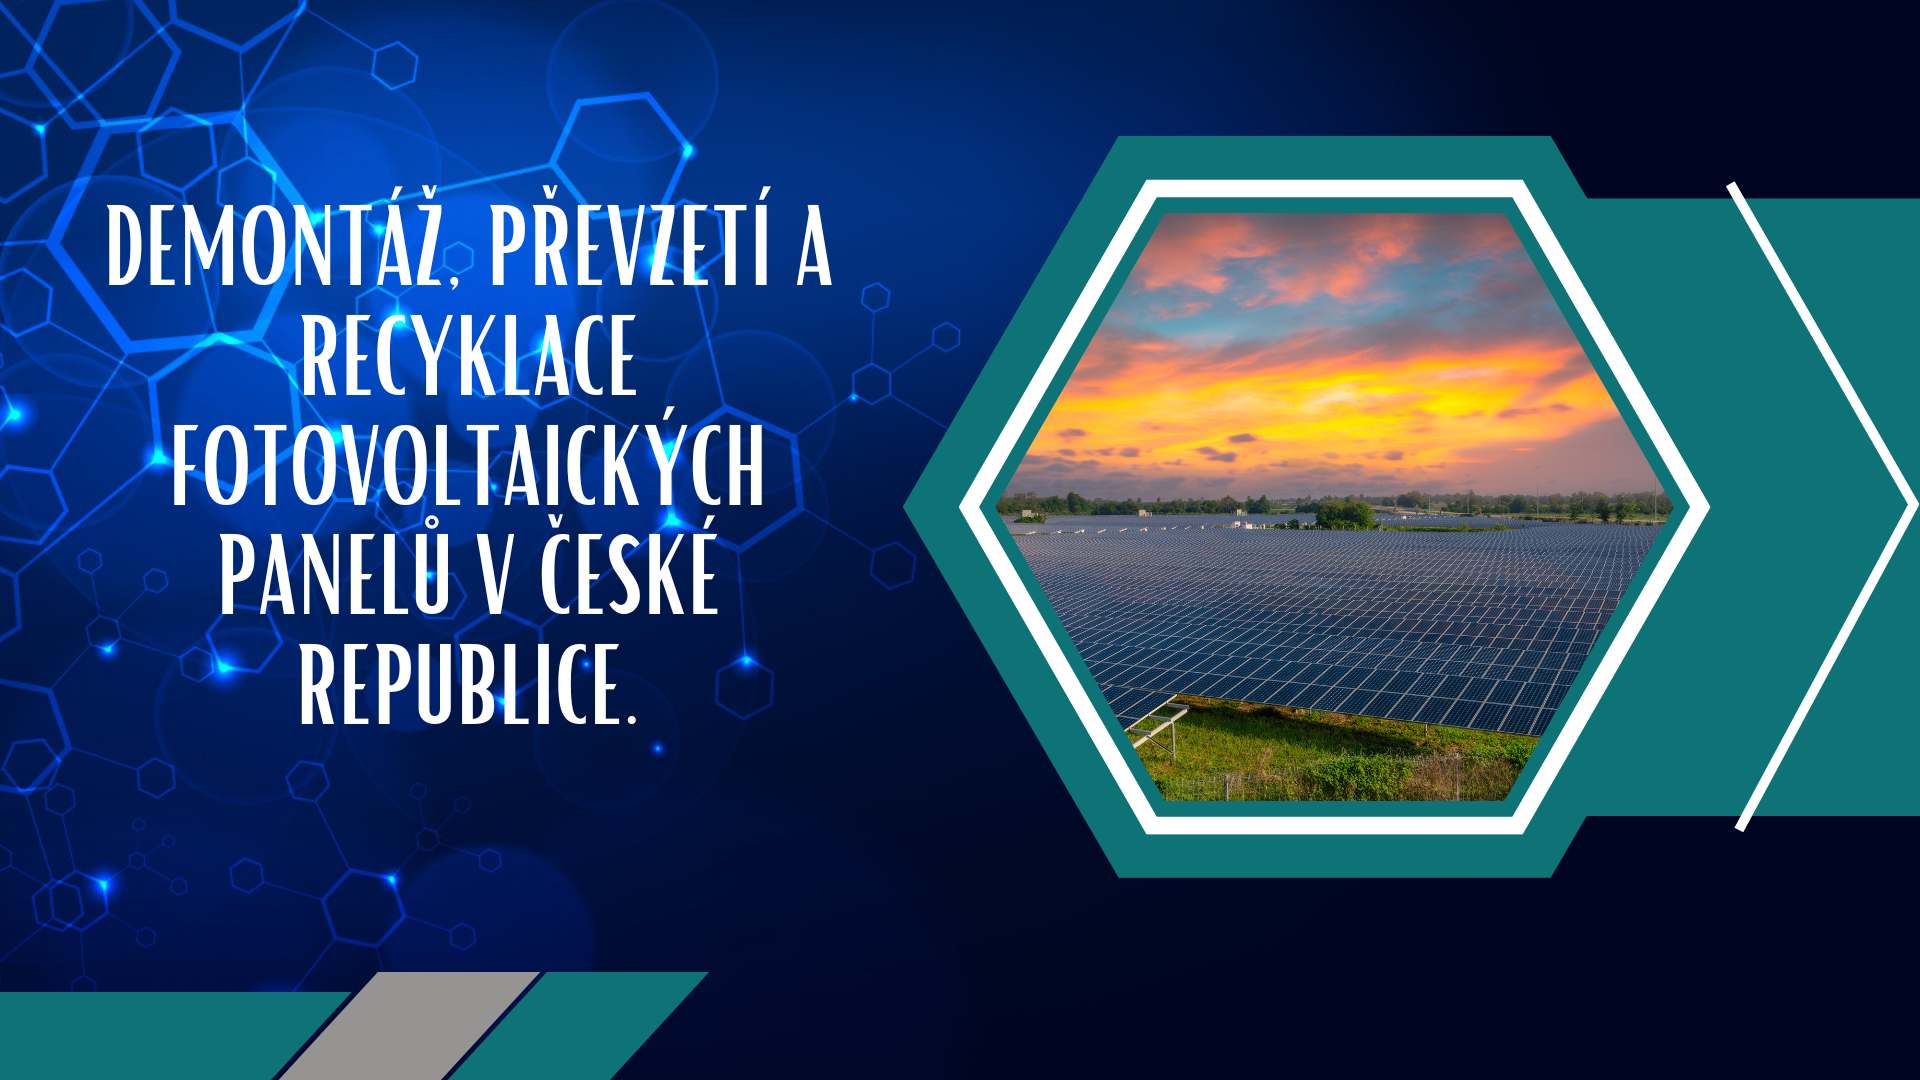 Demontáž, převzetí a recyklace fotovoltaických panelů v České republice.